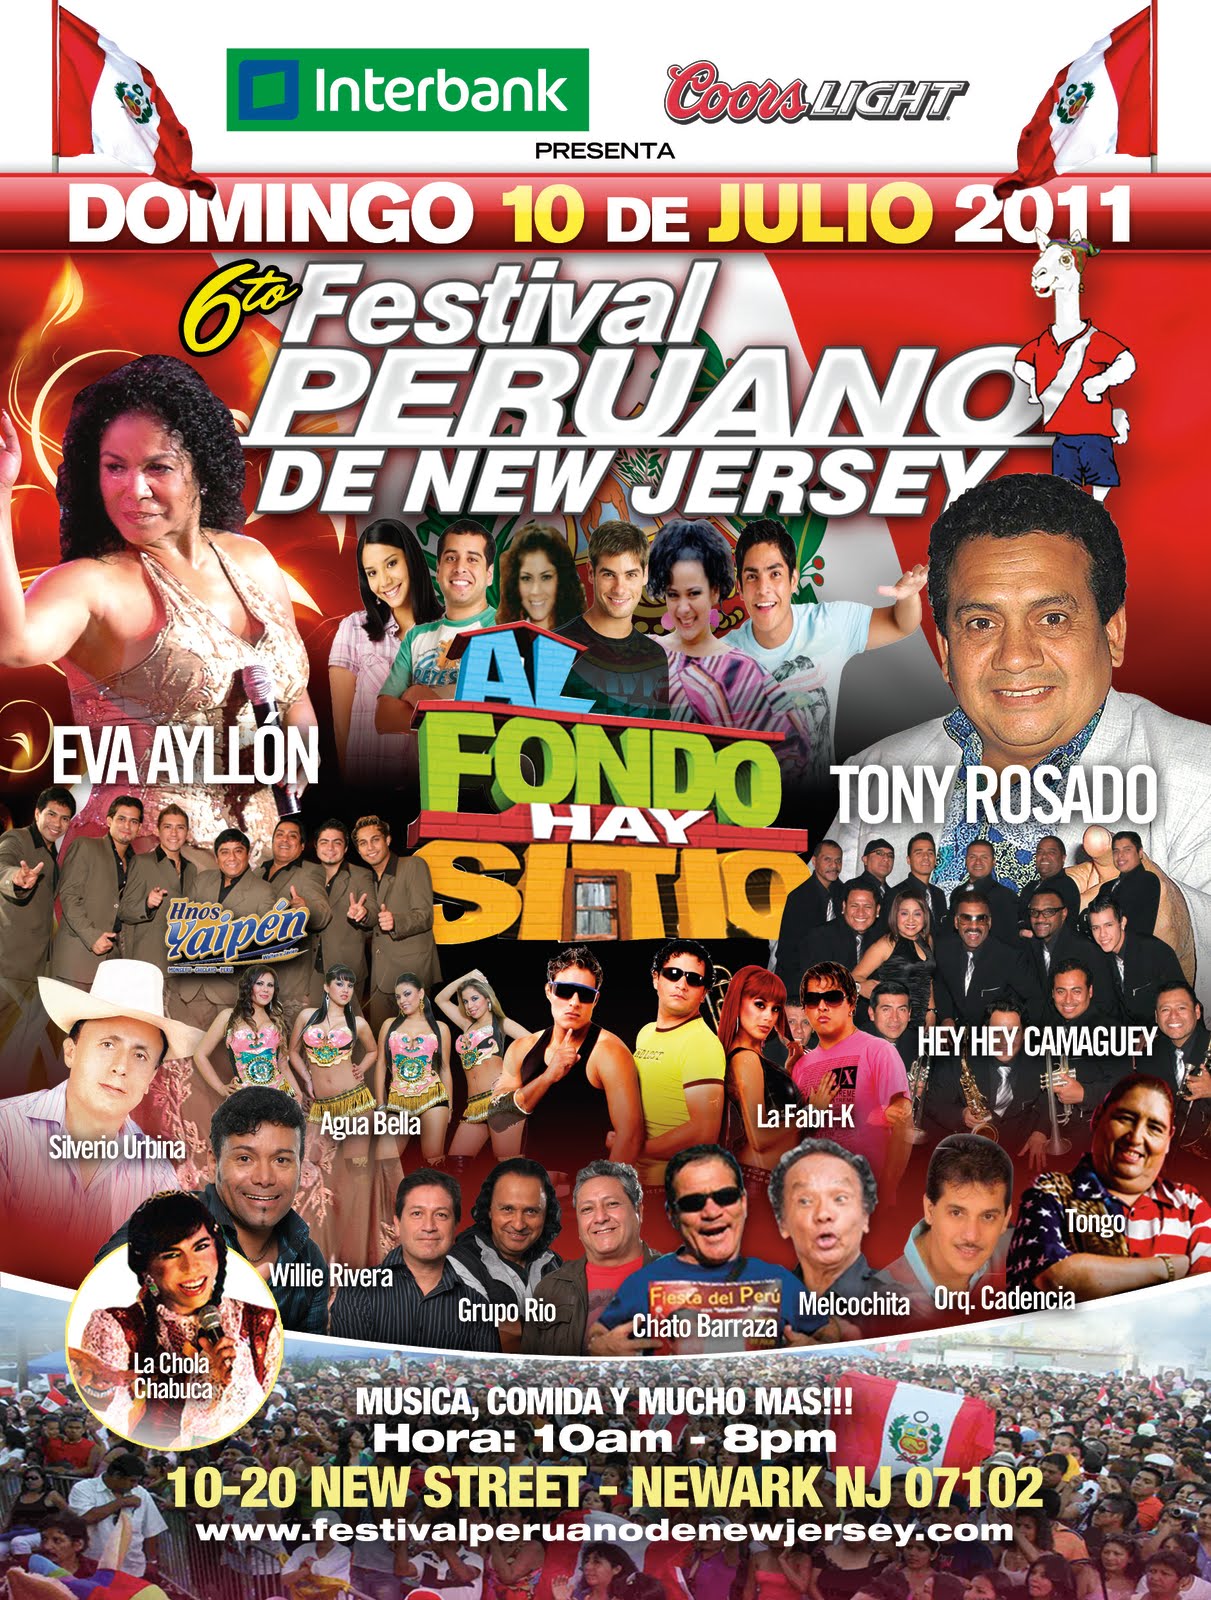 NetjovenUSA El 6to Festival Peruano de New Jersey es el mega evento